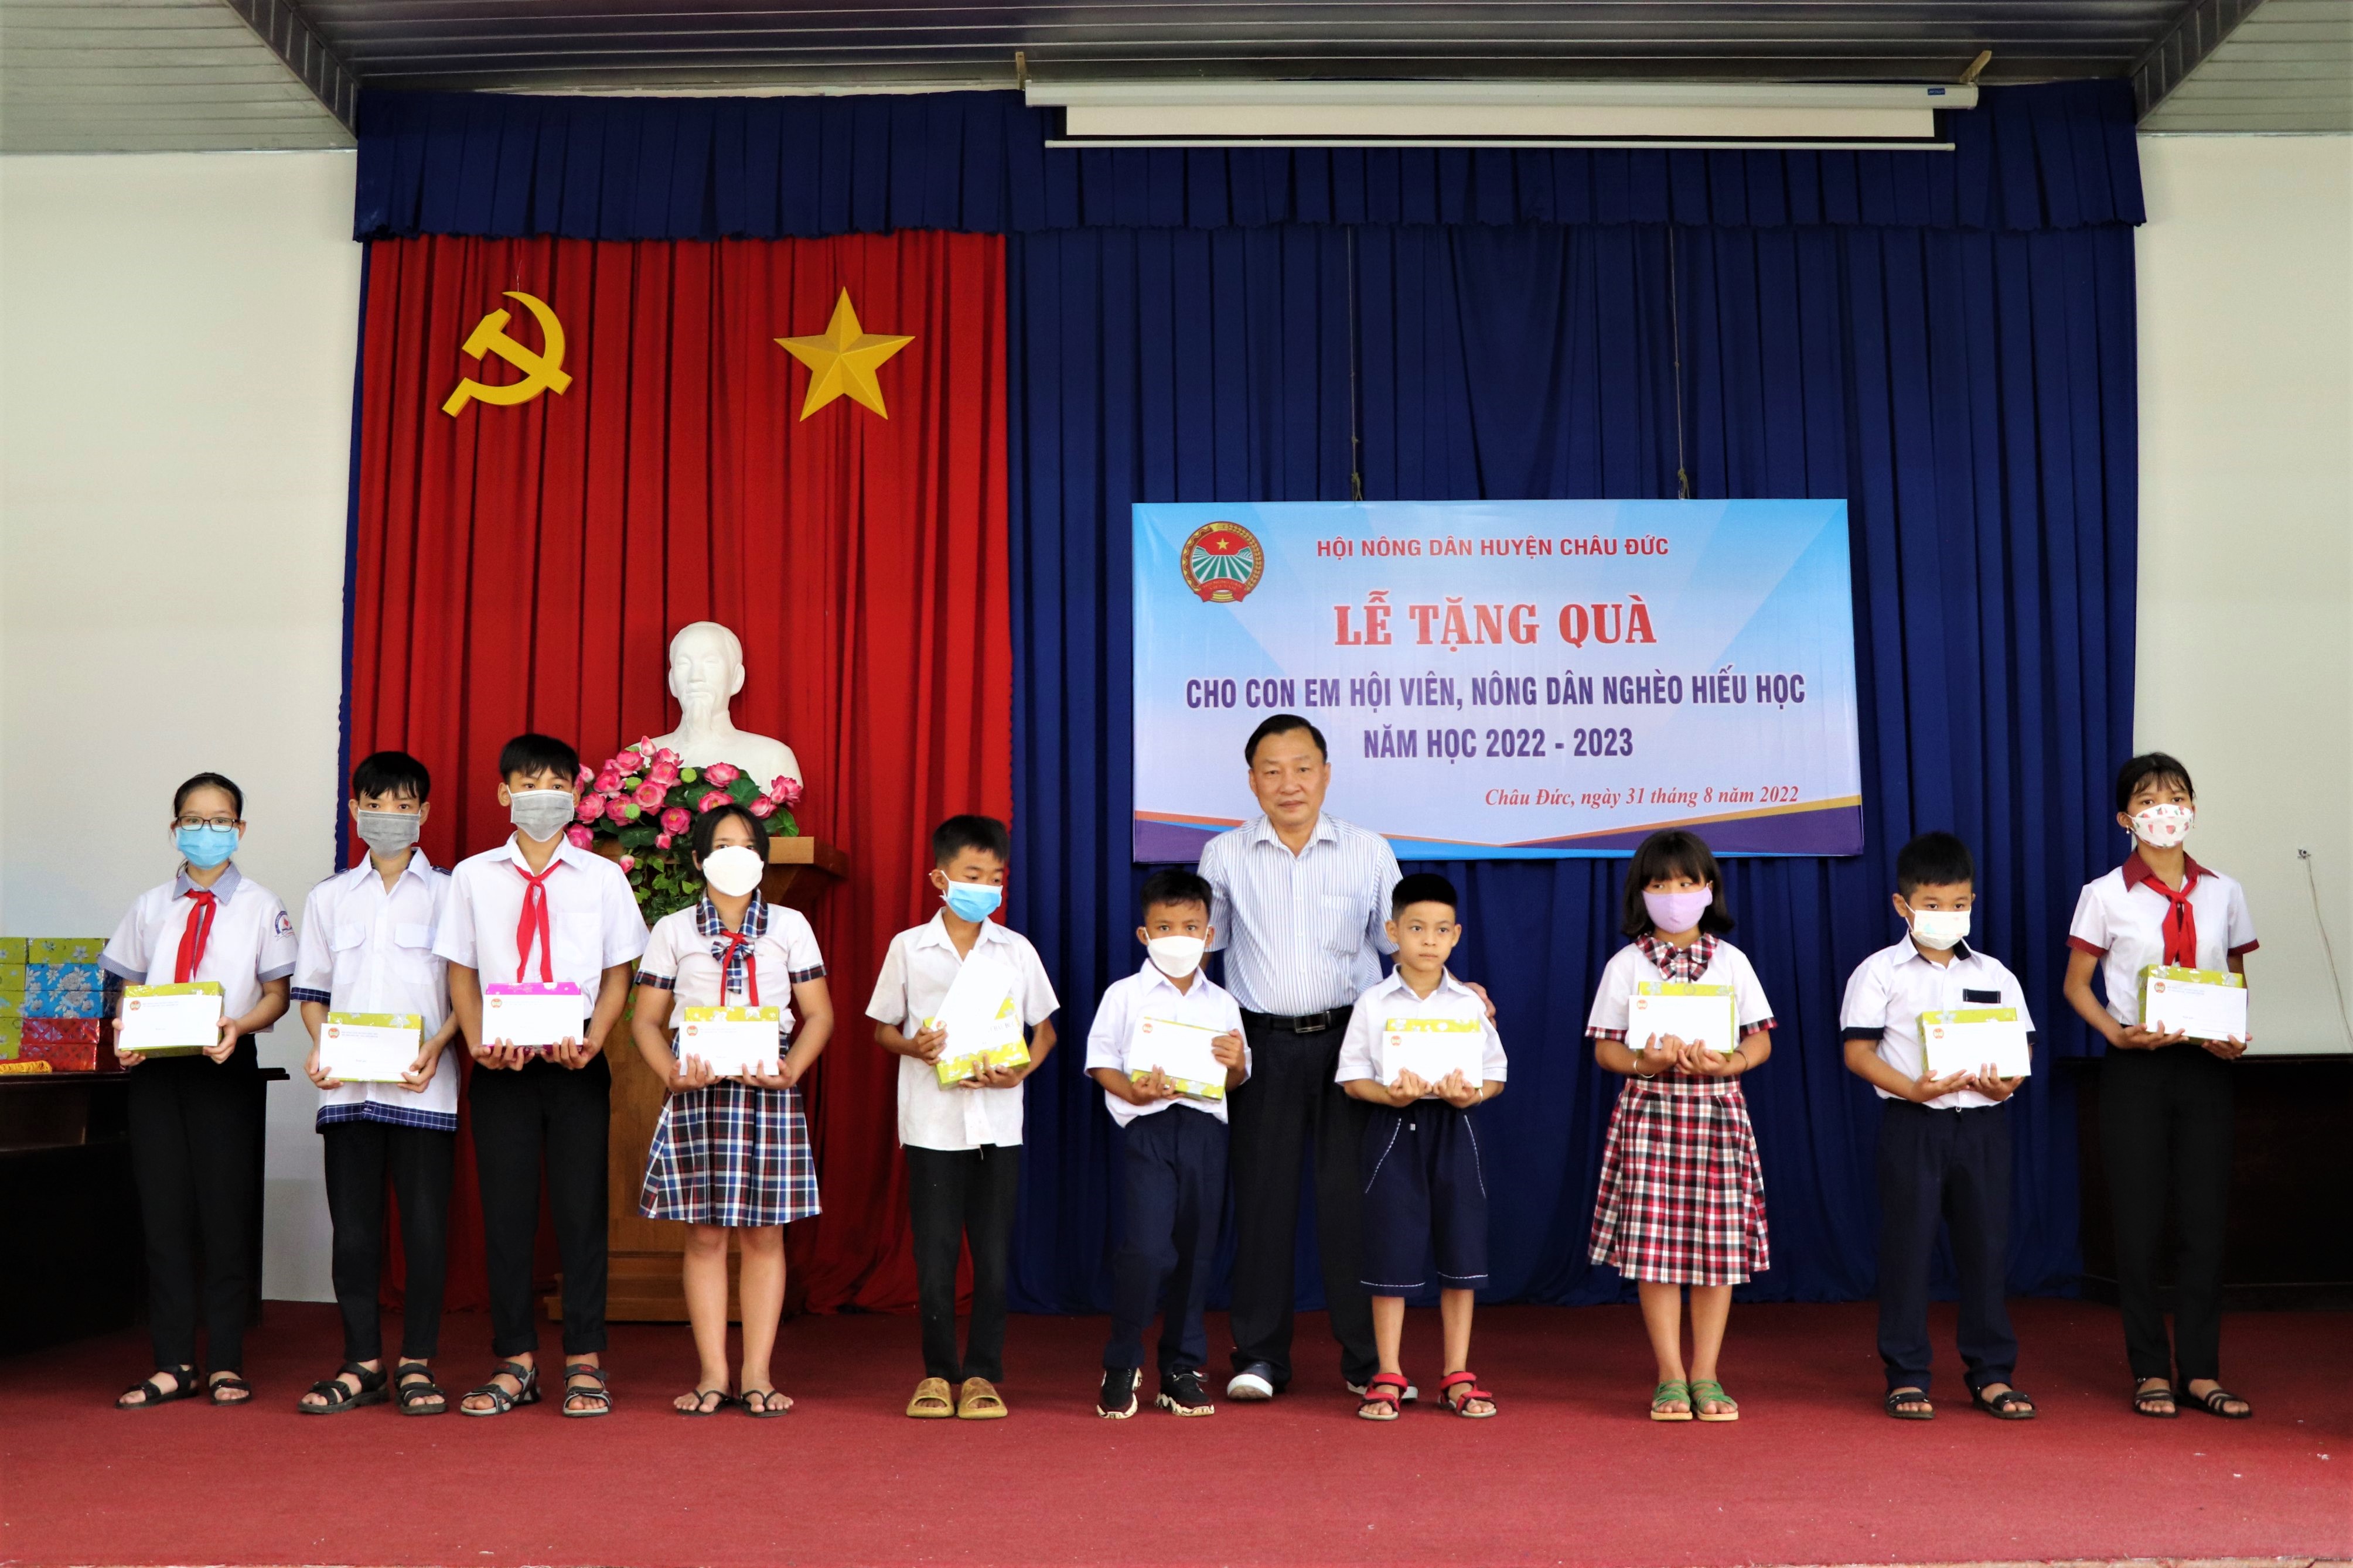 Ông Nguyễn Ngọc Linh, Chủ tịch Hội Nông dân huyện Châu Đức trao tặng quà cho con, em hội viên khó khăn trước thềm năm học mới.